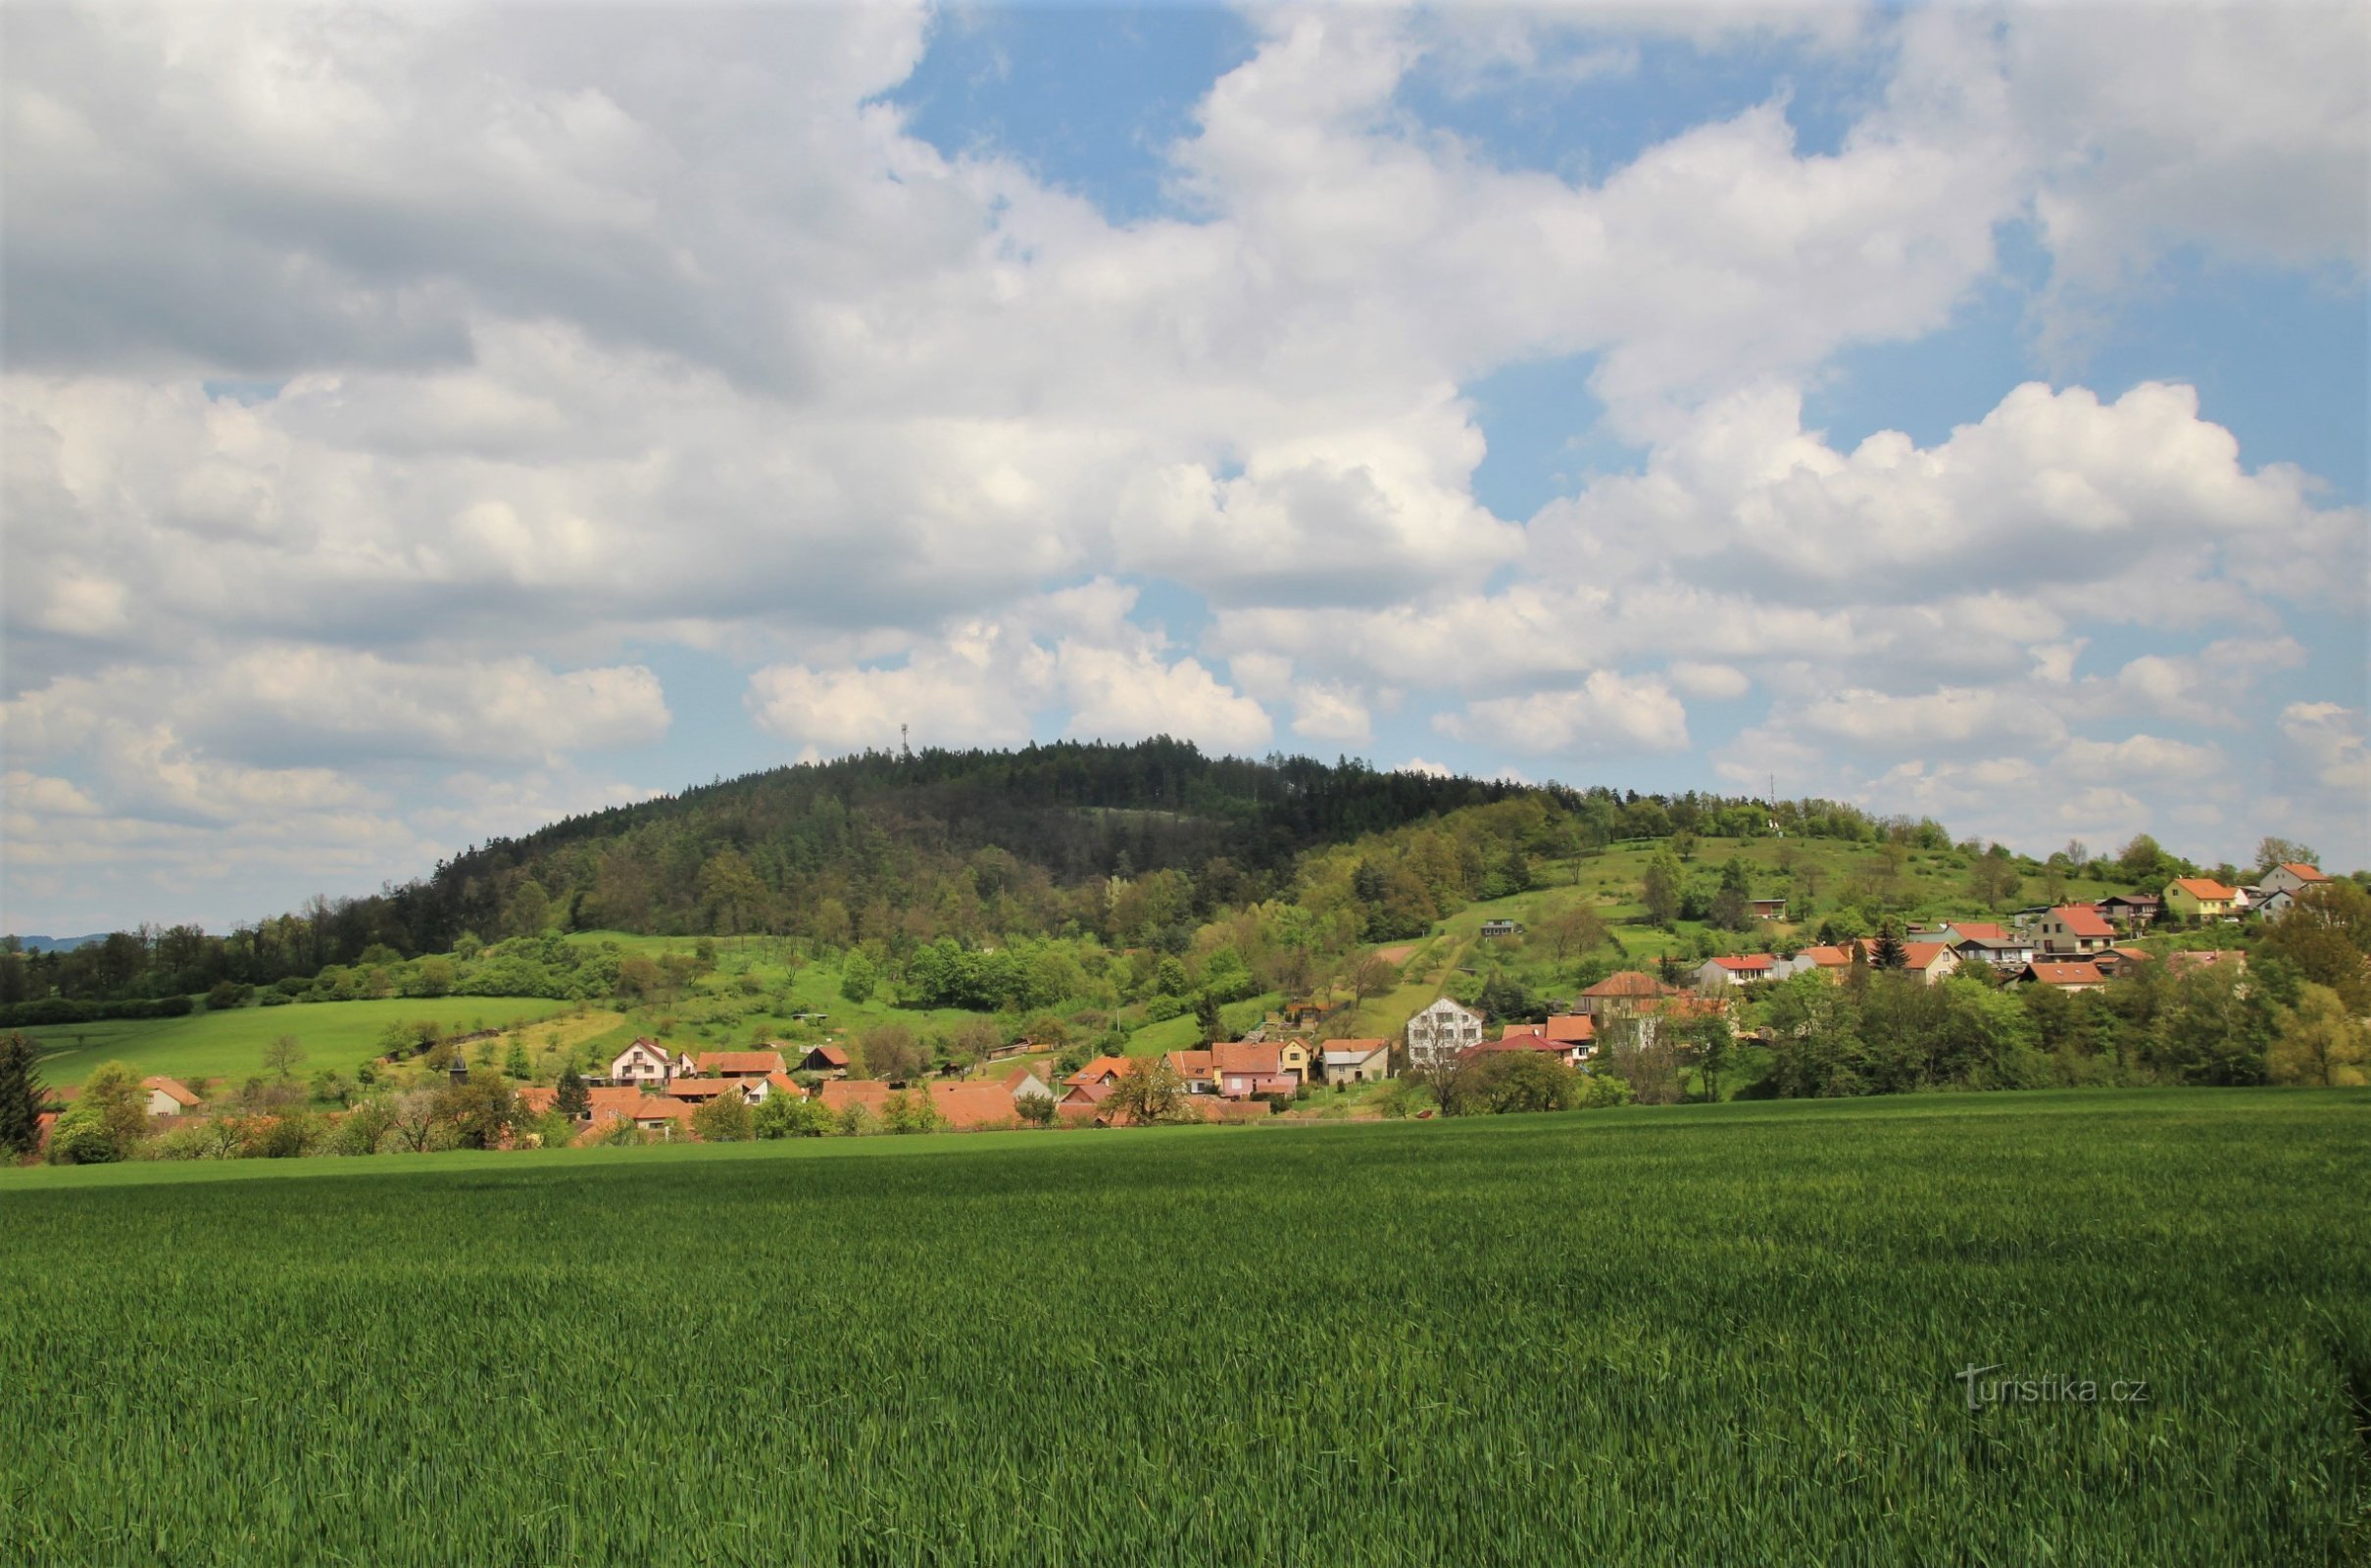 Utsikt över åsen av Fáberka, i förgrunden är byn Jabloňany, till höger finns en utsiktspunkt på åsen